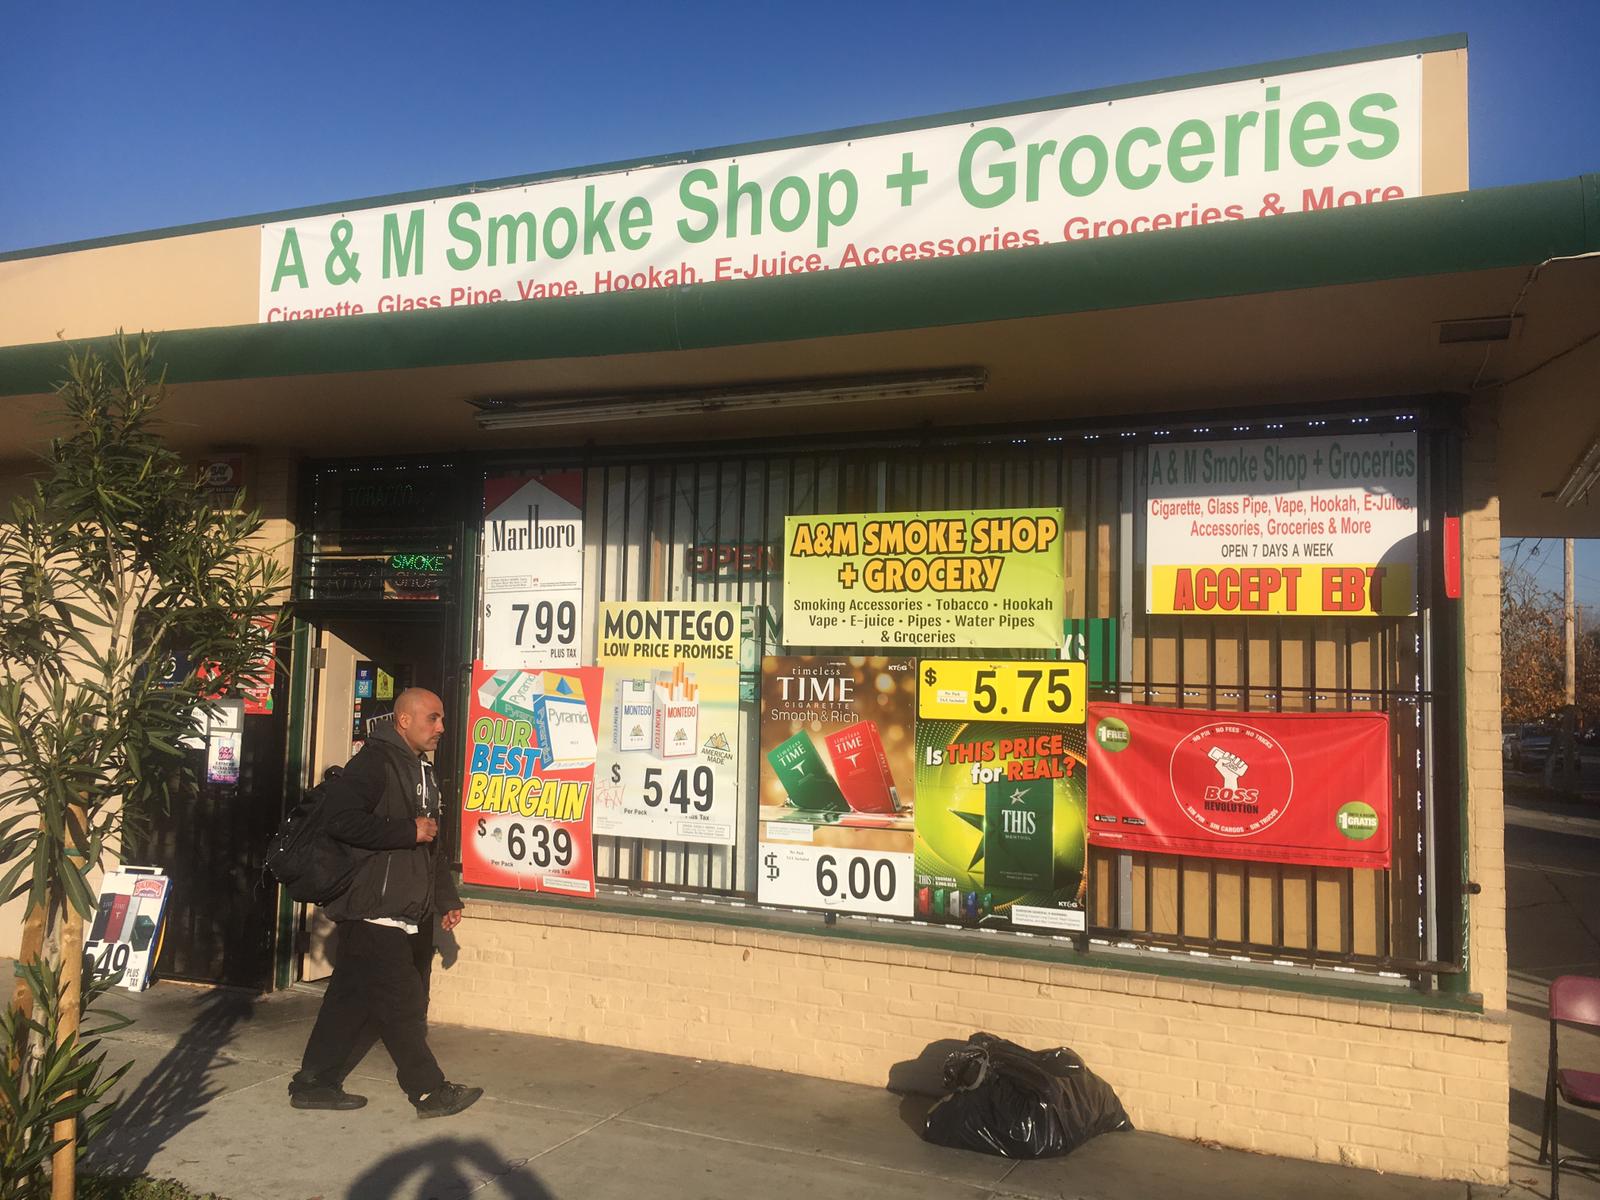 A&M Smoke Shop Plus Groceries